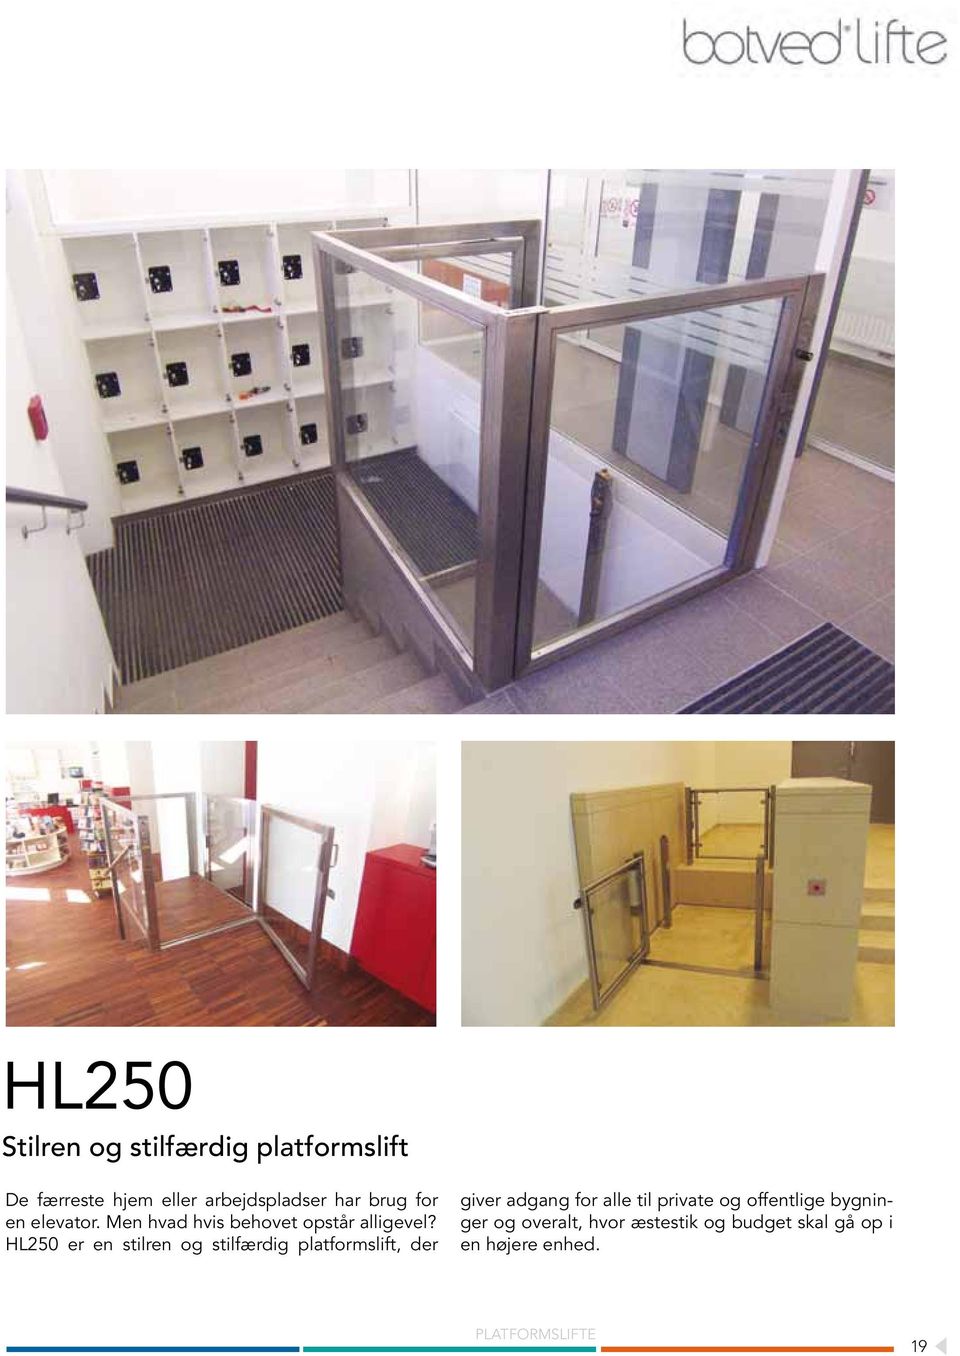 HL250 er en silren og silfærdig plaformslif, der giver adgang for alle il